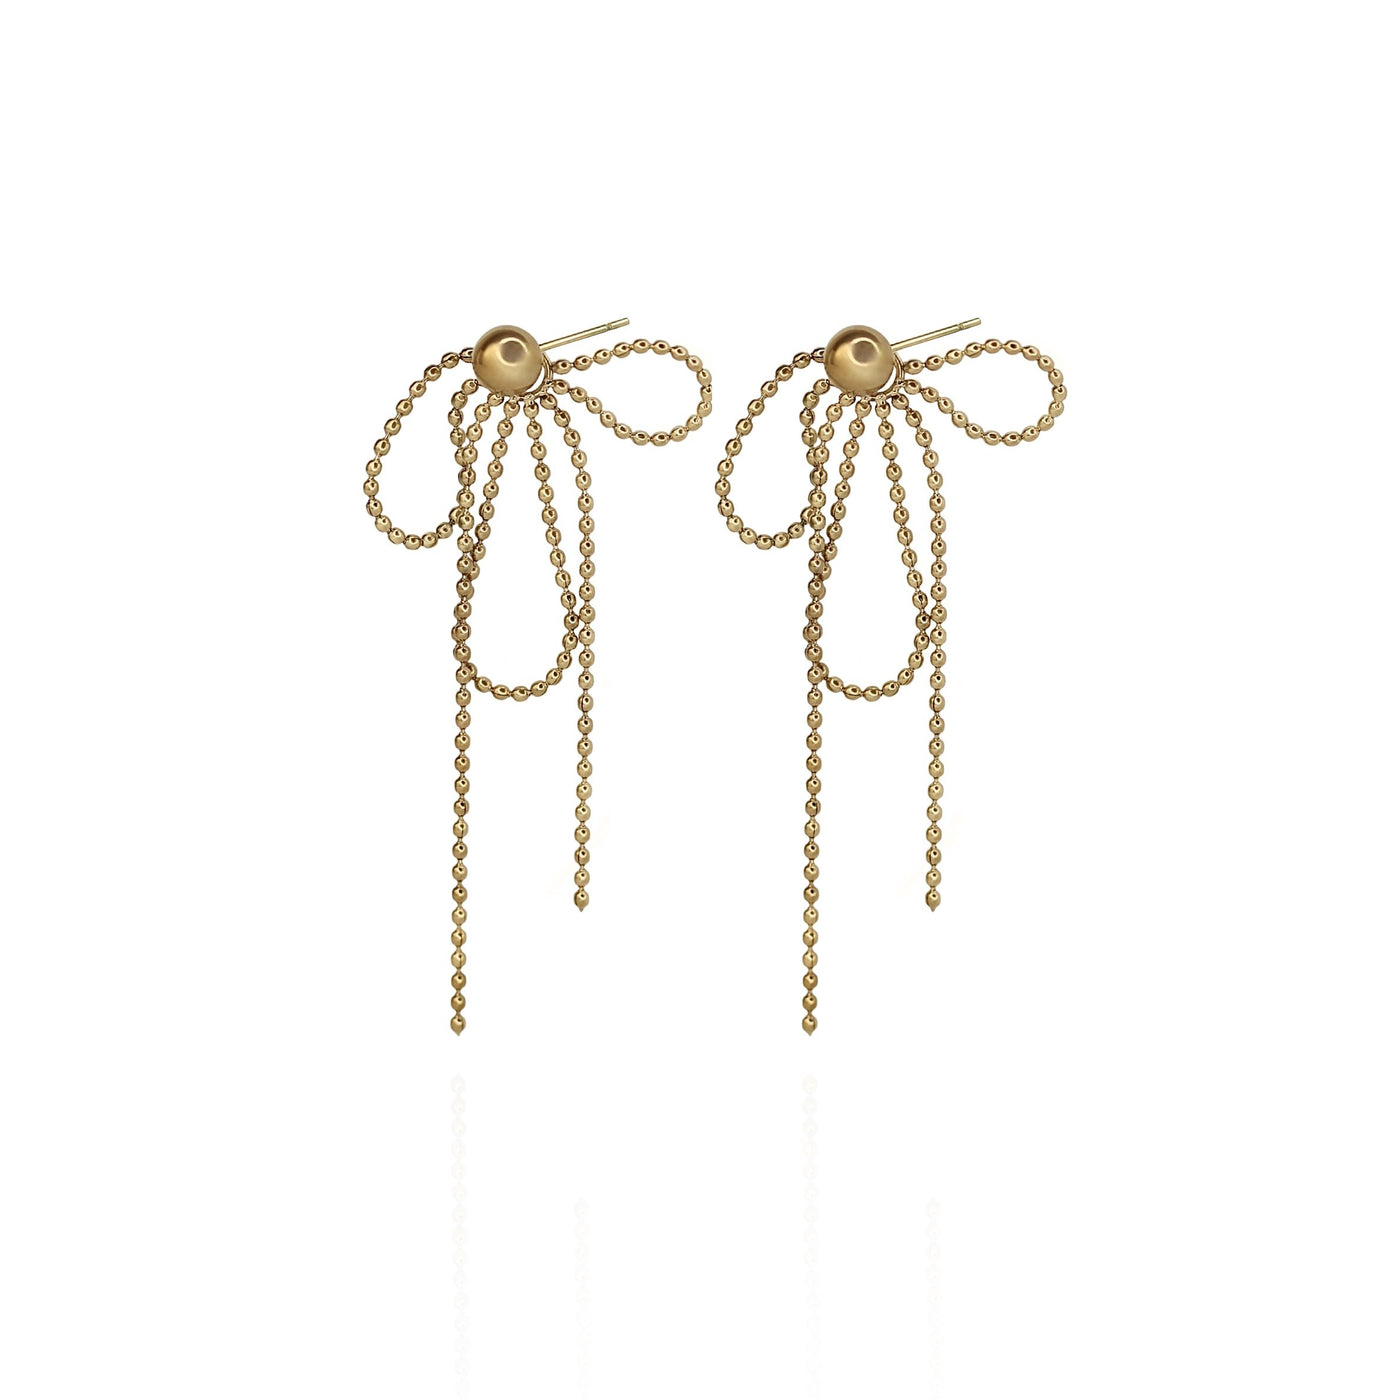 Mistletoe Bow Earrings